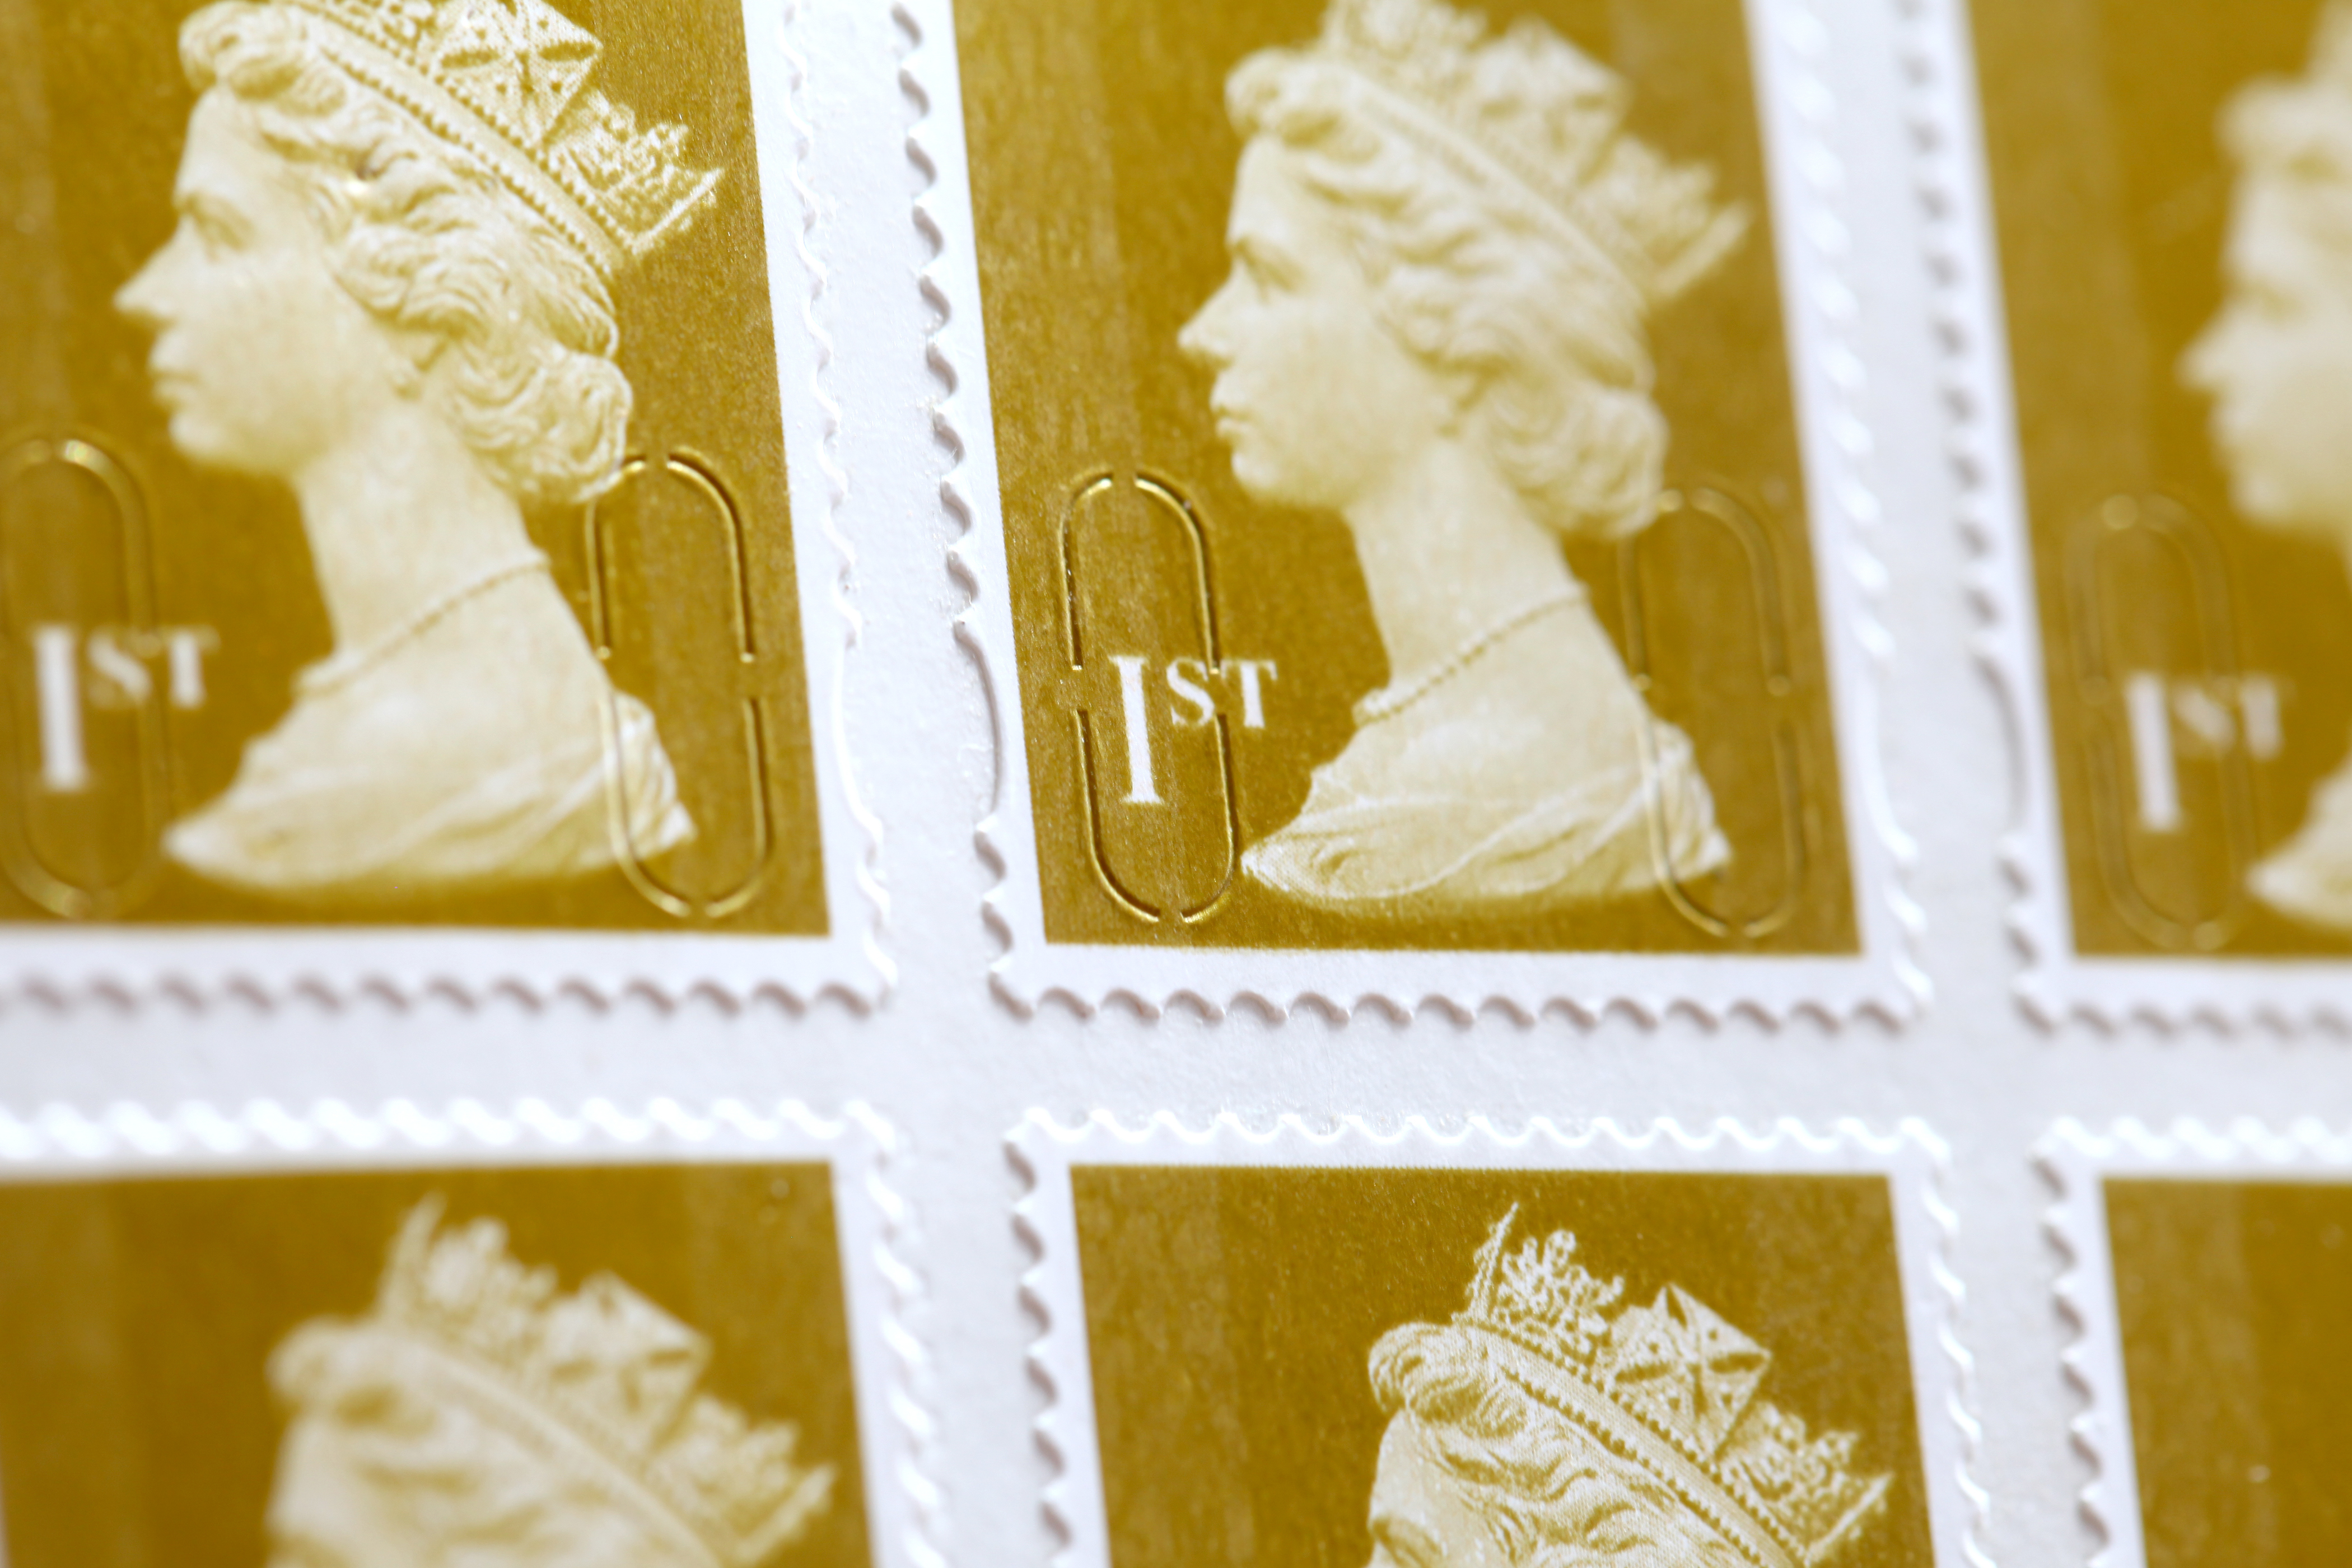 Briefmarken erster Klasse werden in wenigen Tagen um acht Prozent zunehmen